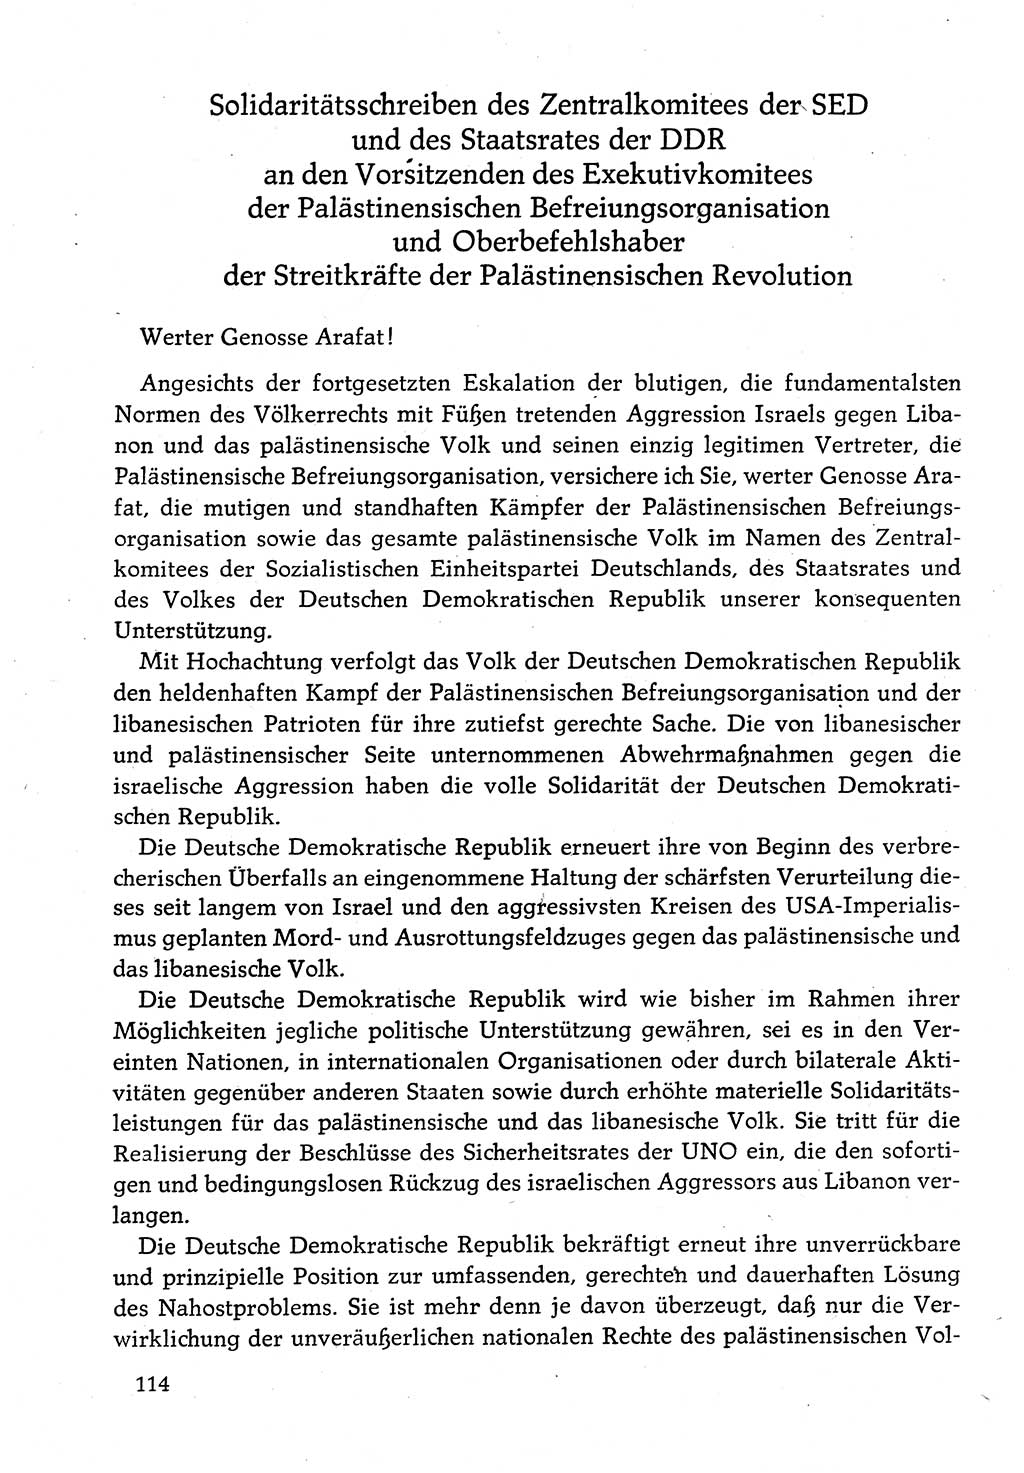 Dokumente der Sozialistischen Einheitspartei Deutschlands (SED) [Deutsche Demokratische Republik (DDR)] 1982-1983, Seite 114 (Dok. SED DDR 1982-1983, S. 114)